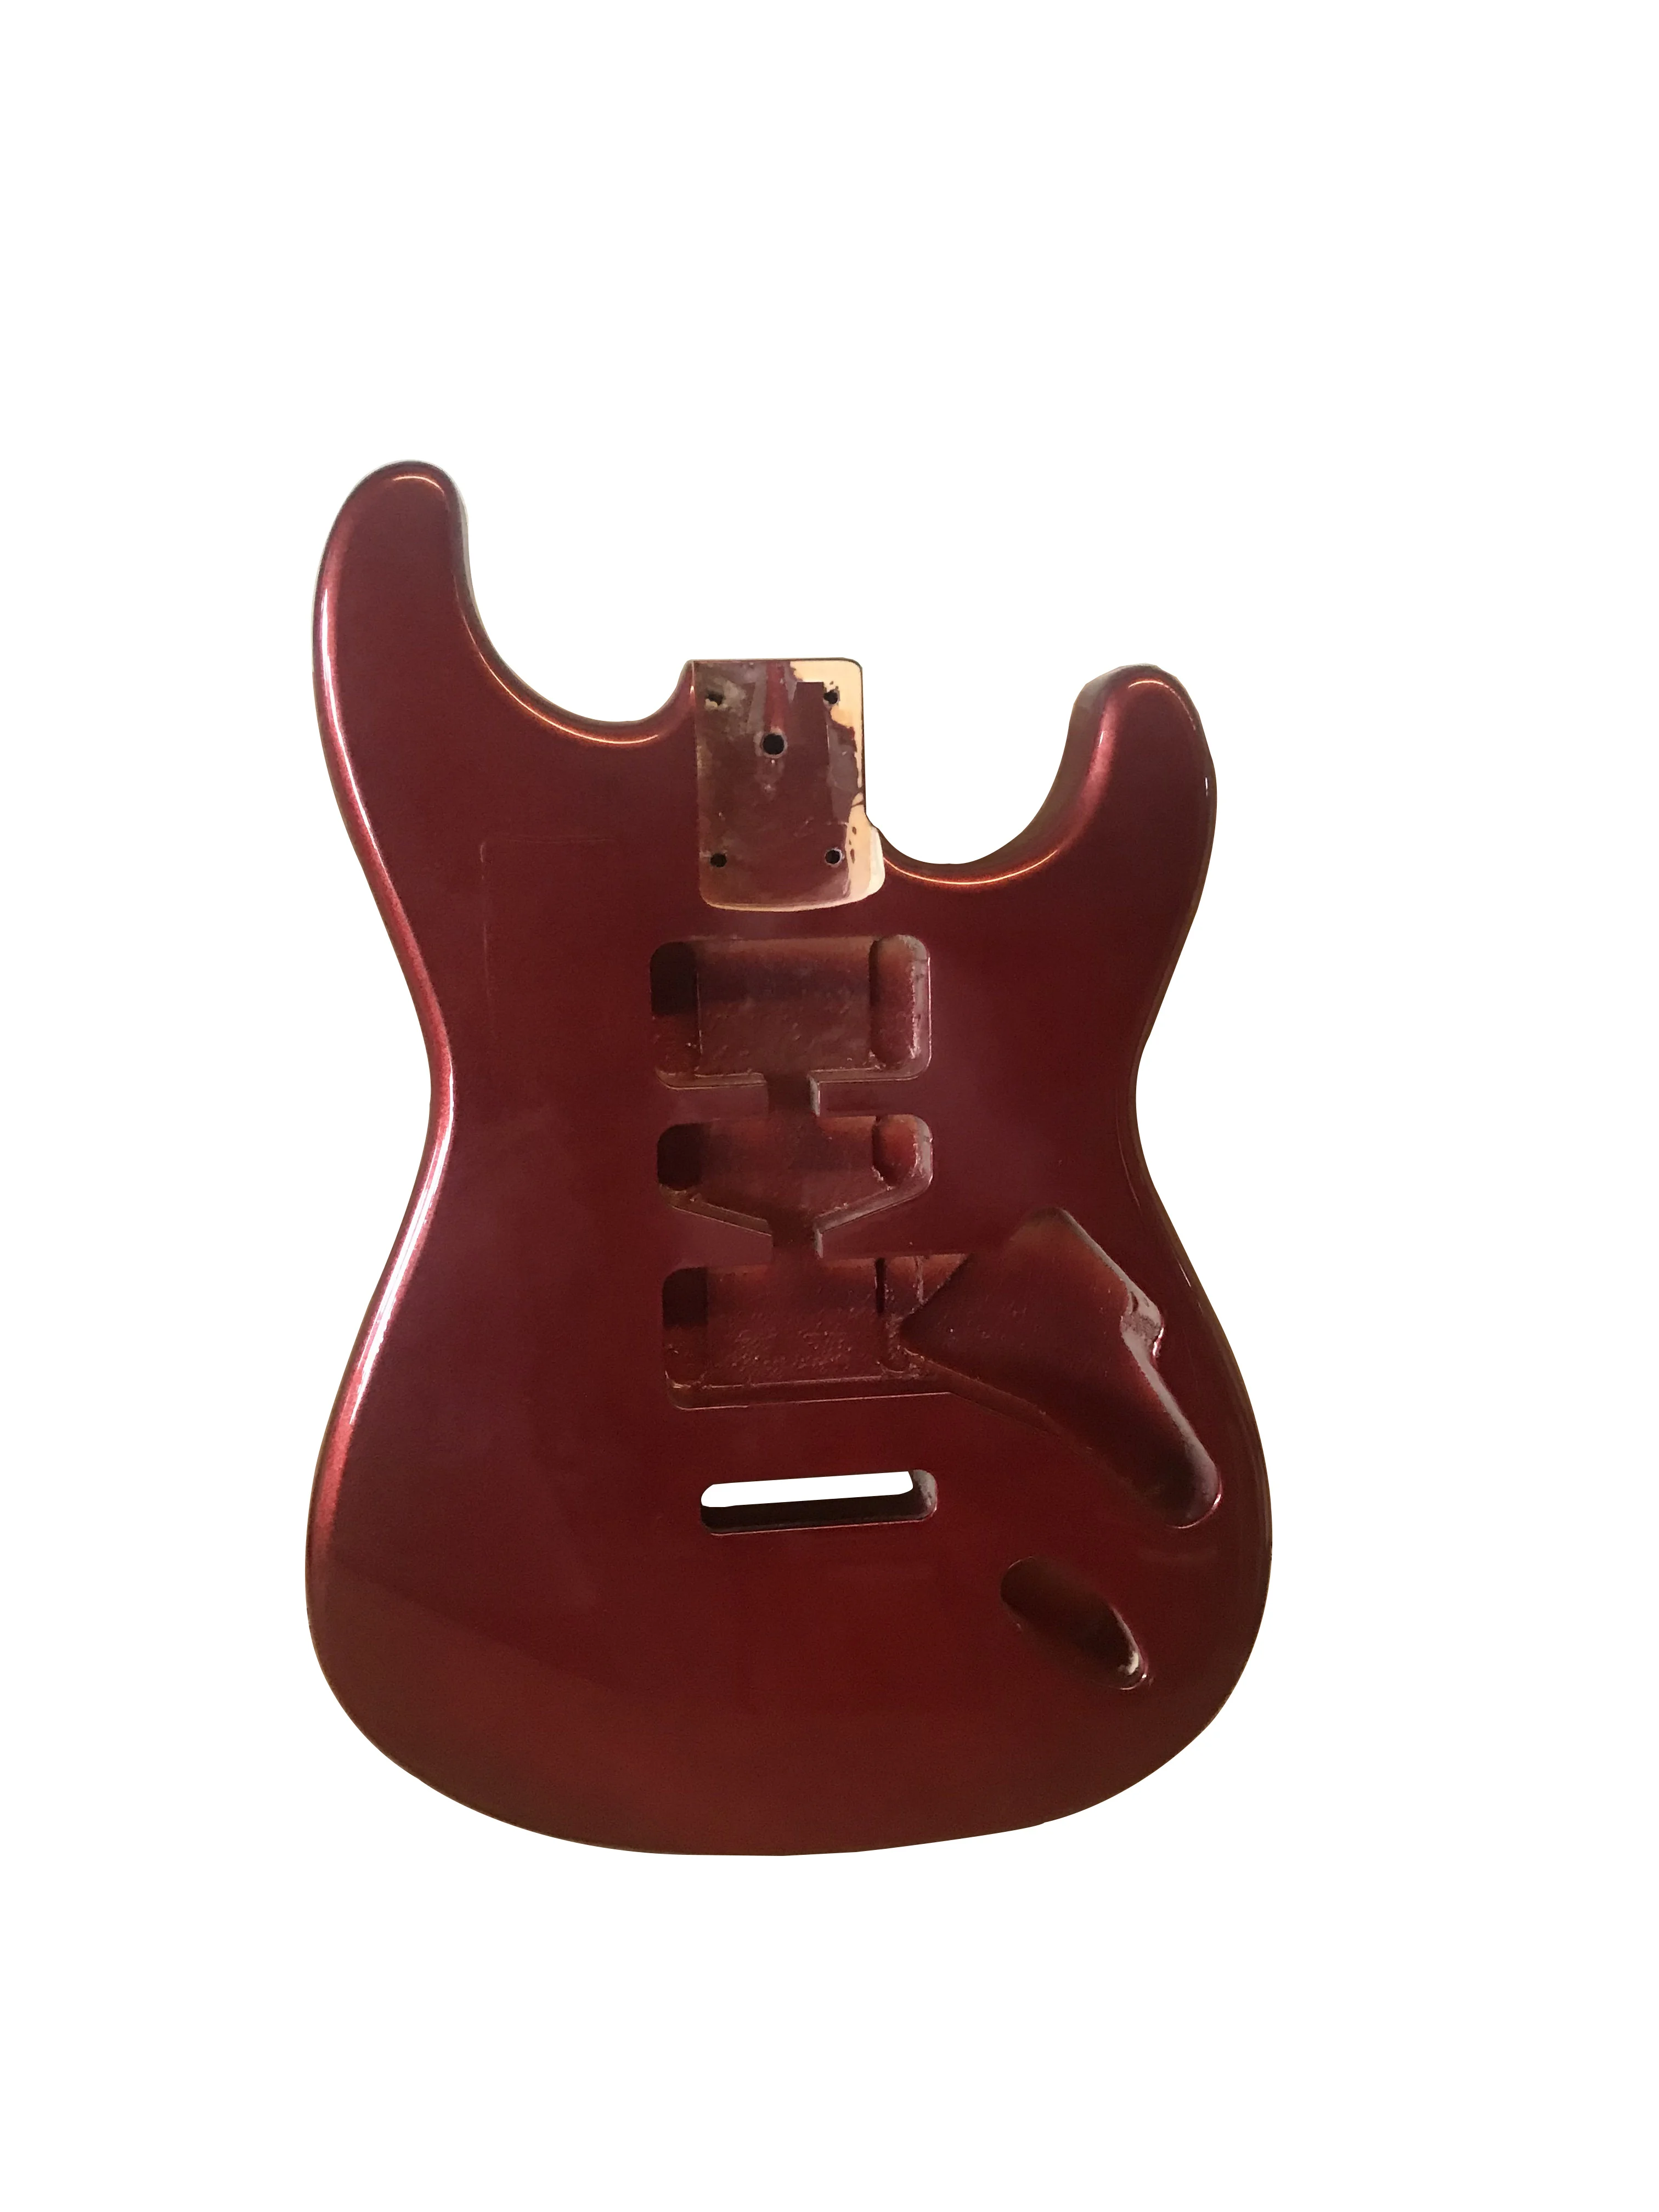 Guitarra Eléctrica estilo fender st, barril semihueco de alta calidad, en blanco, rojo oscuro